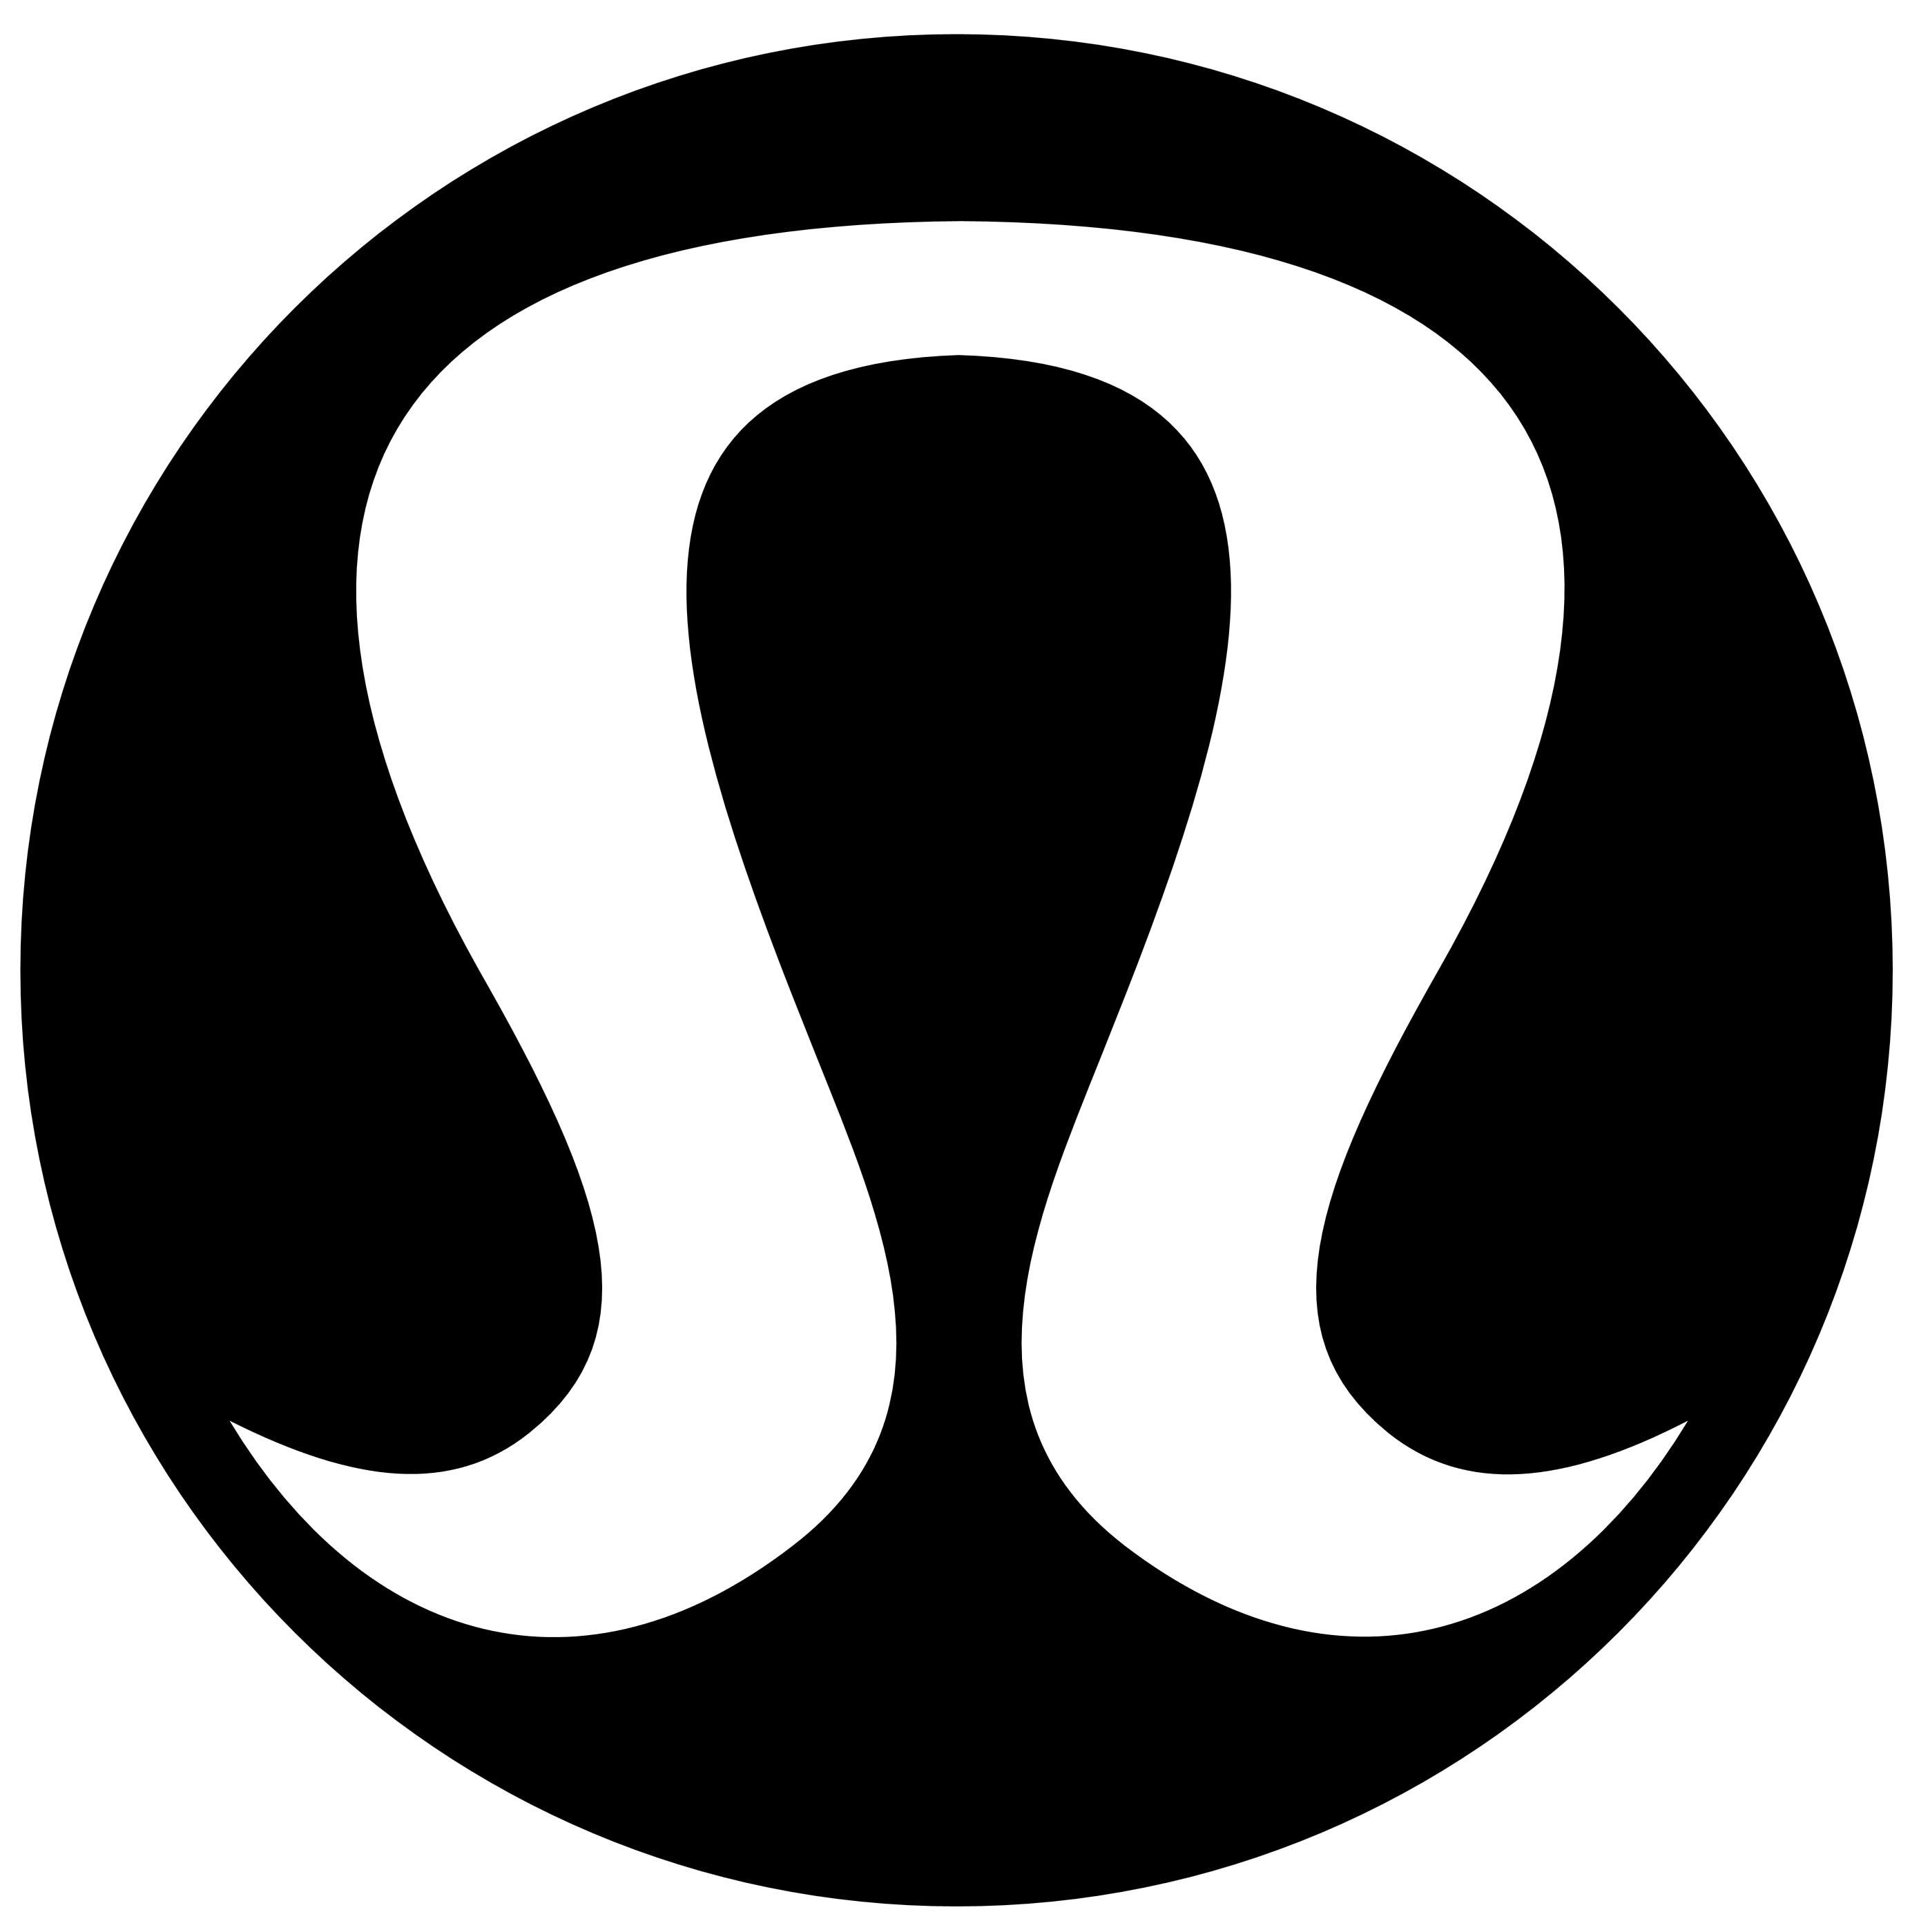 http://logos-download.com/wp-content/uploads/2016/08/Lululemon_logo_black.png